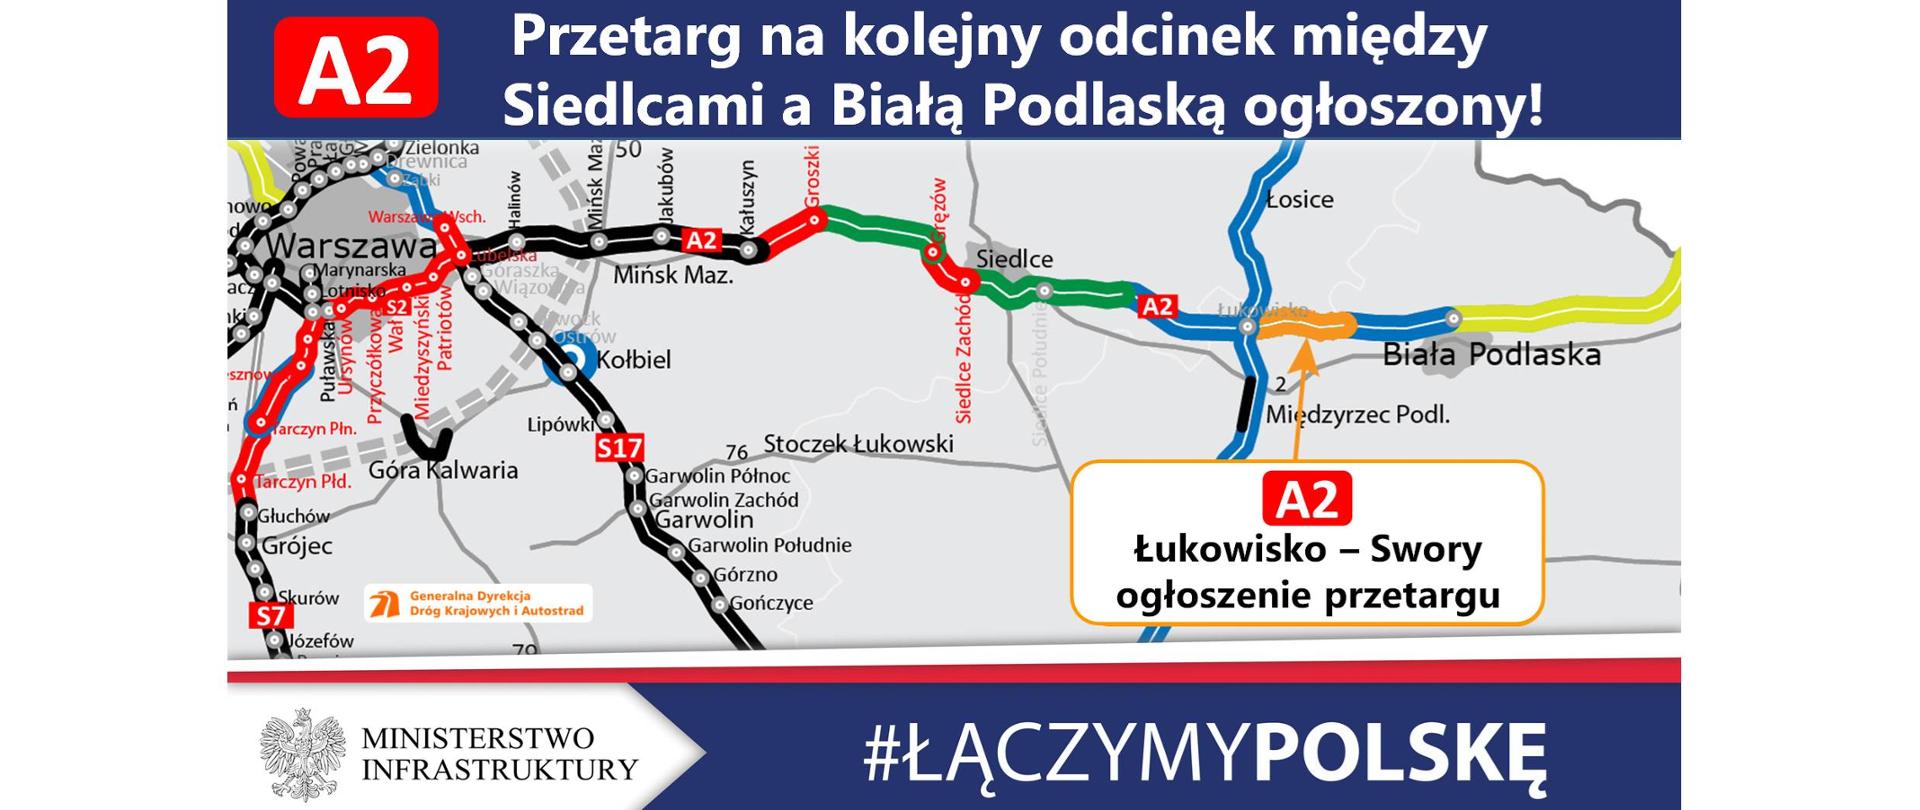 Rusza przetarg na kolejny odcinek A2 między Siedlcami a Białą Podlaską - infografika